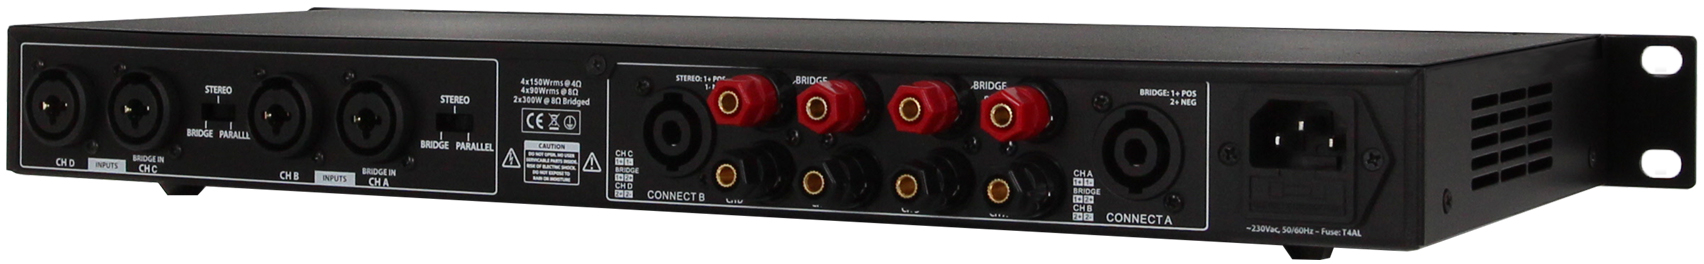 Definitive Audio Quad 1u 150d - Etapa final de potencia de varios canales - Variation 2